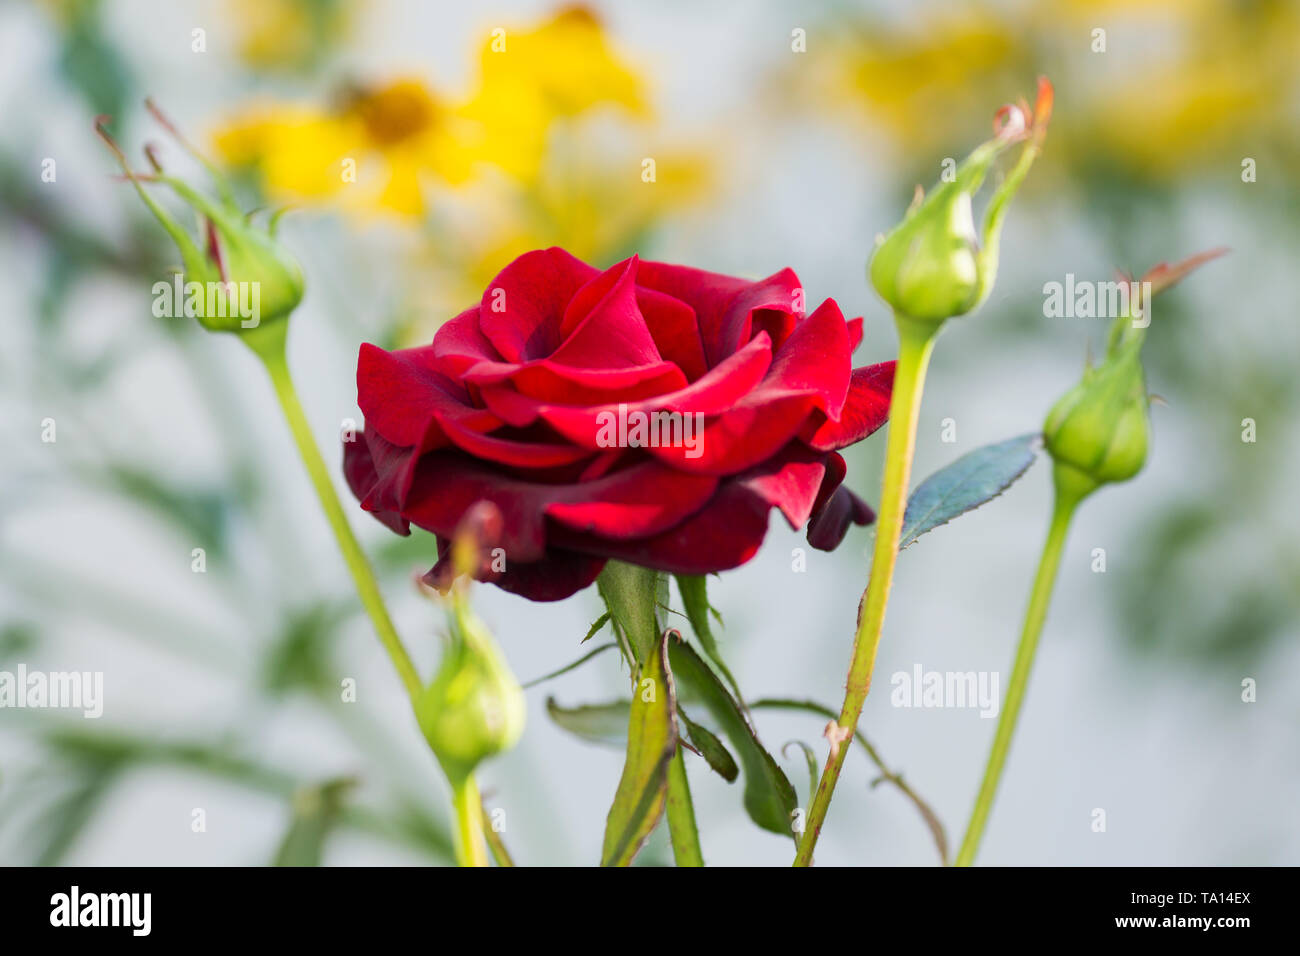 rose flower with buds closeup summer garden Stock Photo